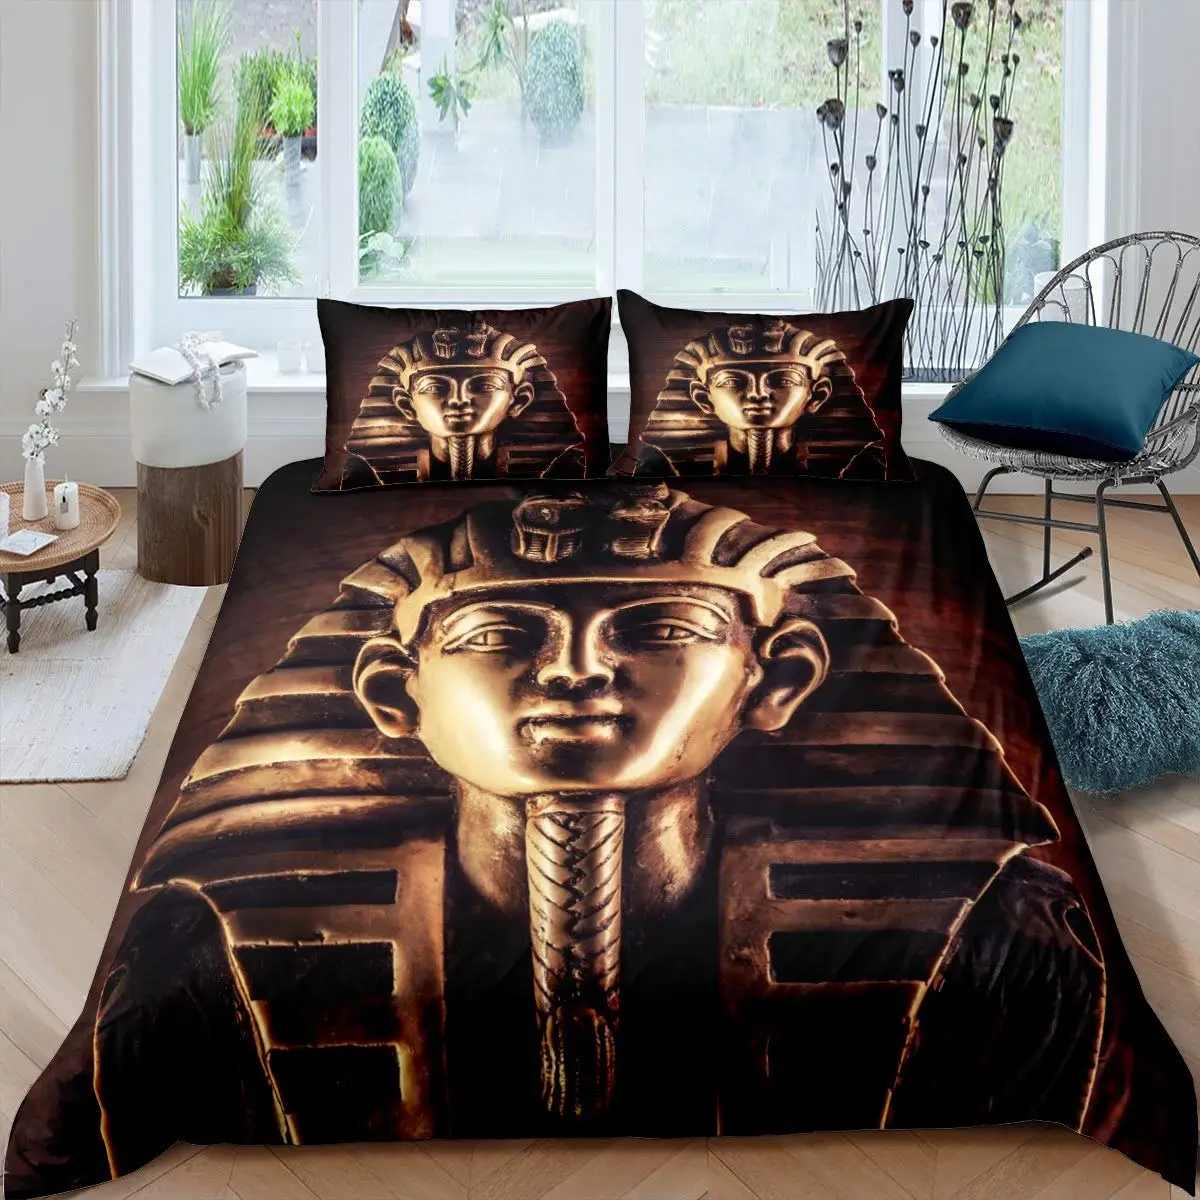 

Комплект постельного белья из полиэстера с рисунком Фараона и пирамиды